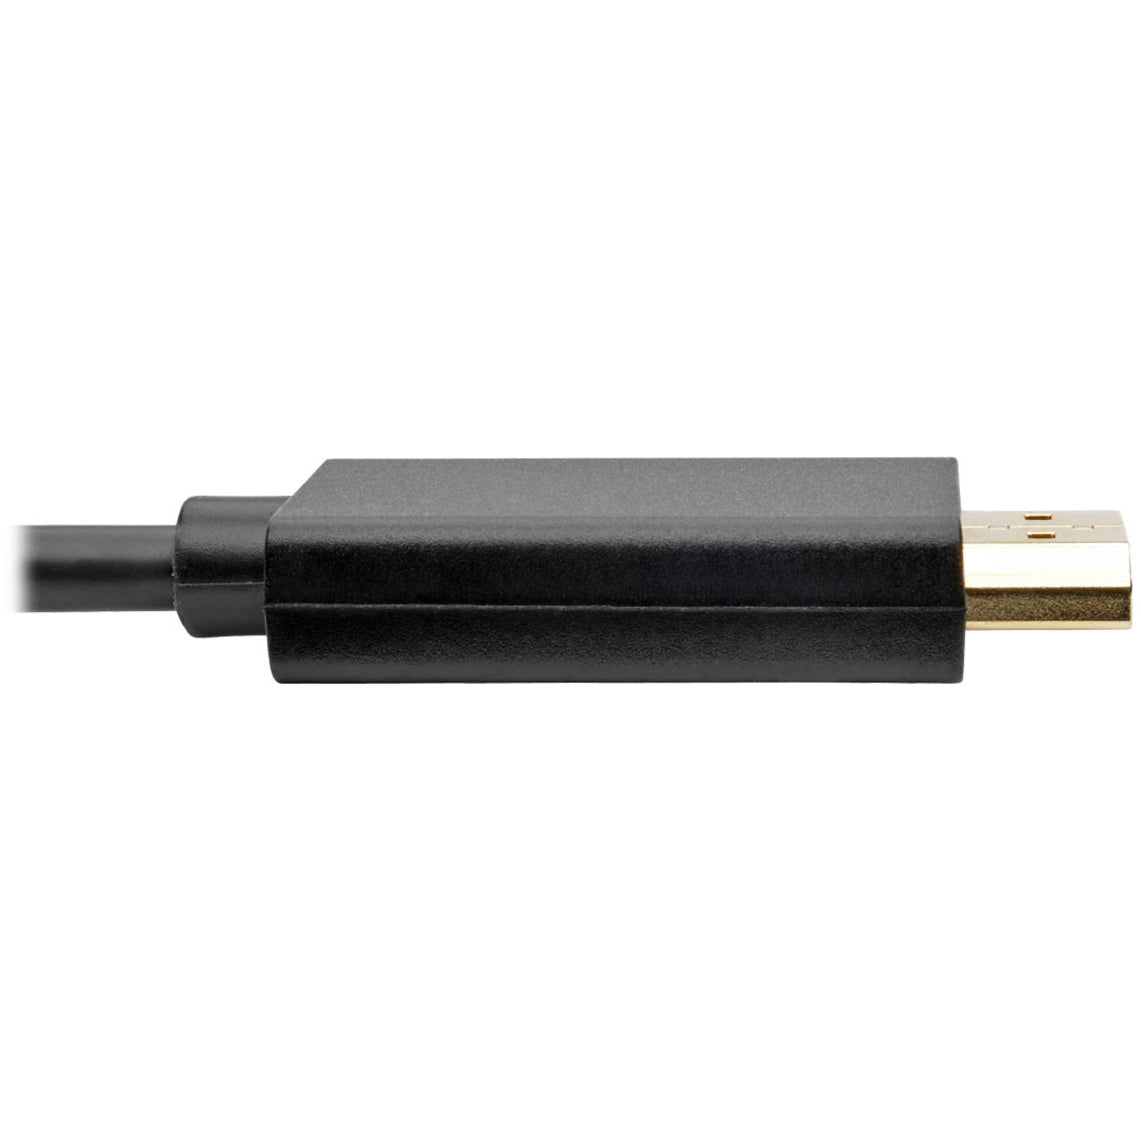 Tripp Lite P586-003-HDMI Cable de adaptador Mini DisplayPort a HD (M/M) 1080p 3 pies. Marca: Tripp Lite.